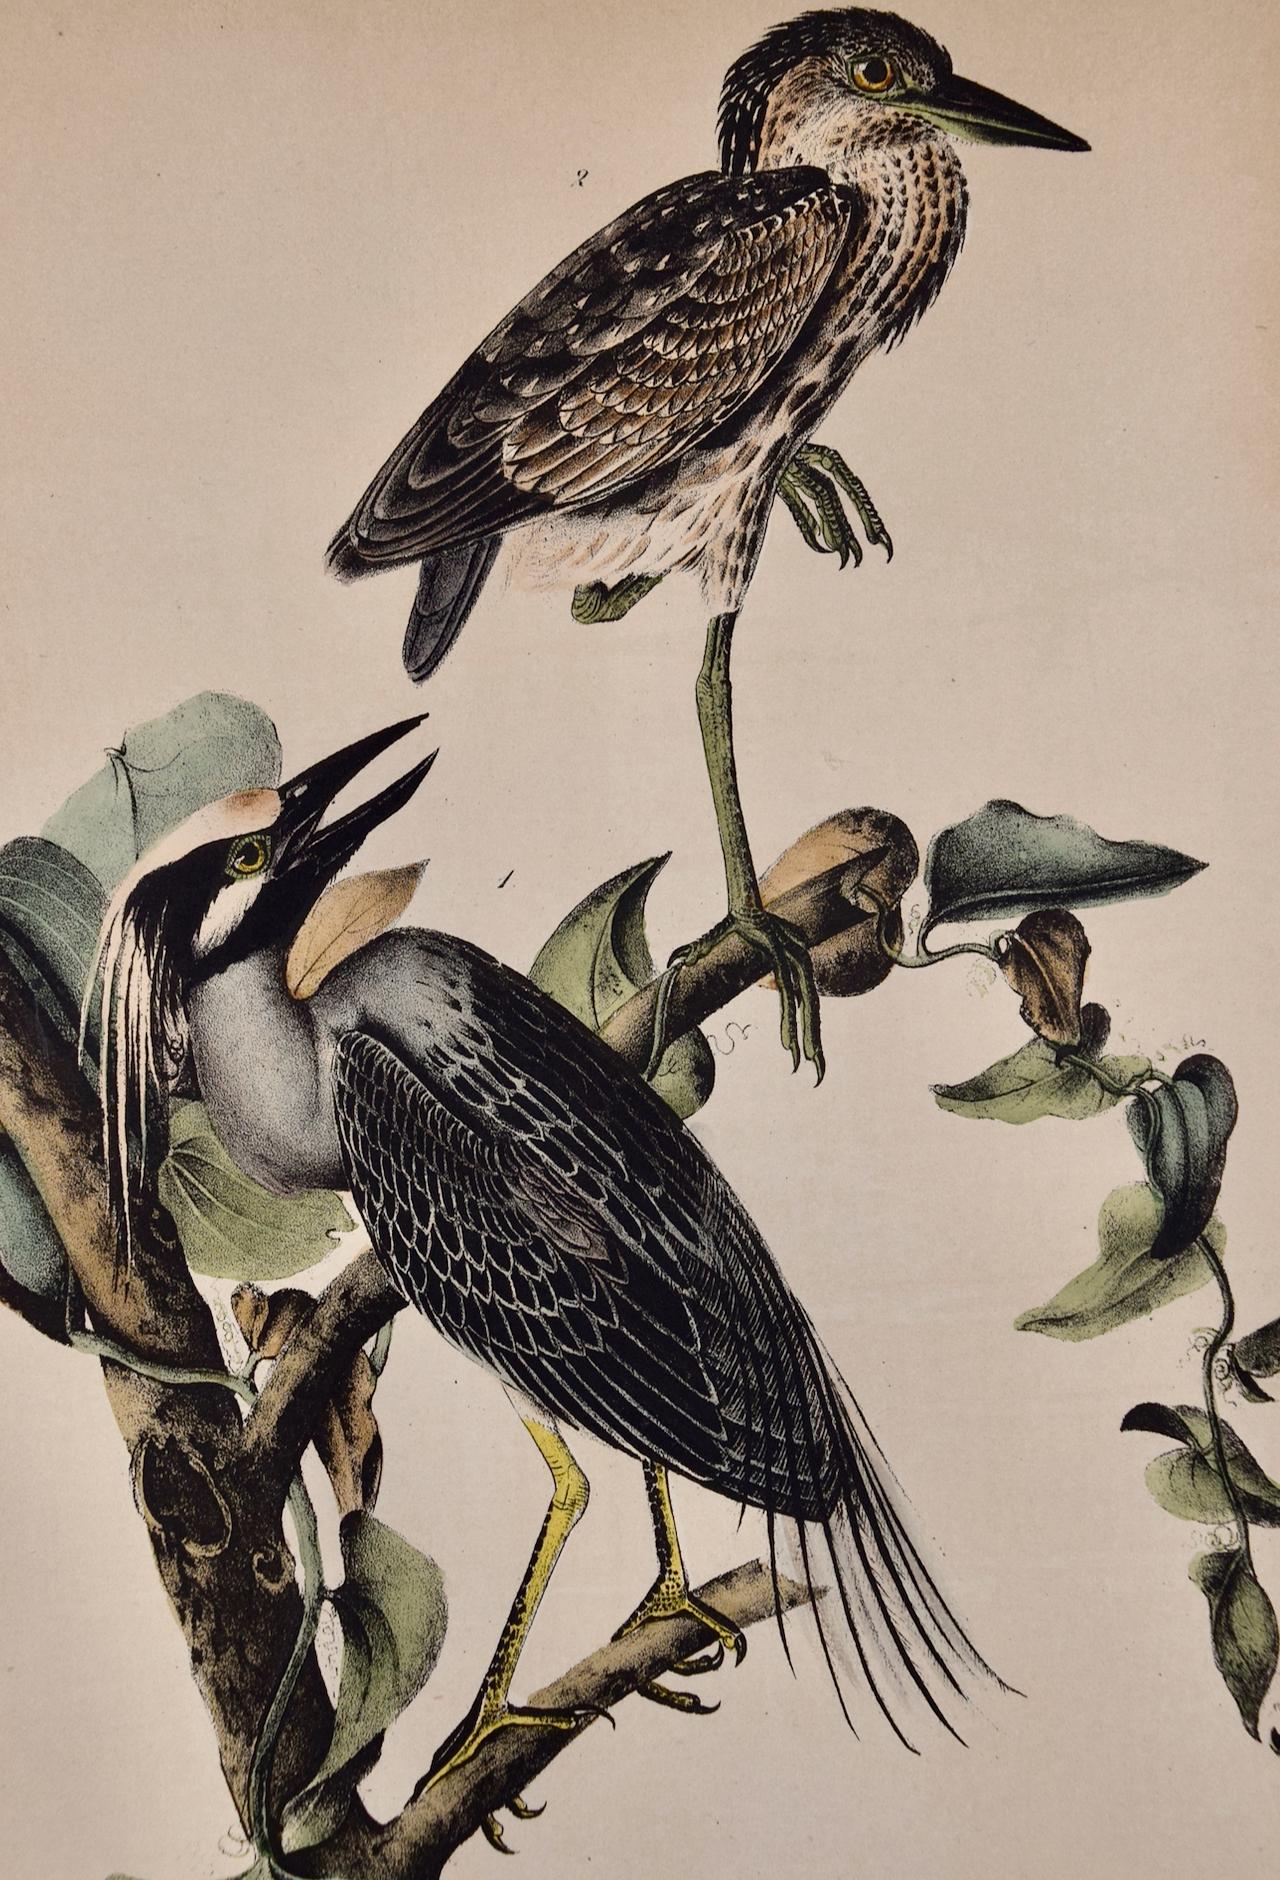 Nachthimmel-Vogel: Eine handkolorierte Audubon-Vogellithographie aus dem 19. Jahrhundert – Print von John James Audubon